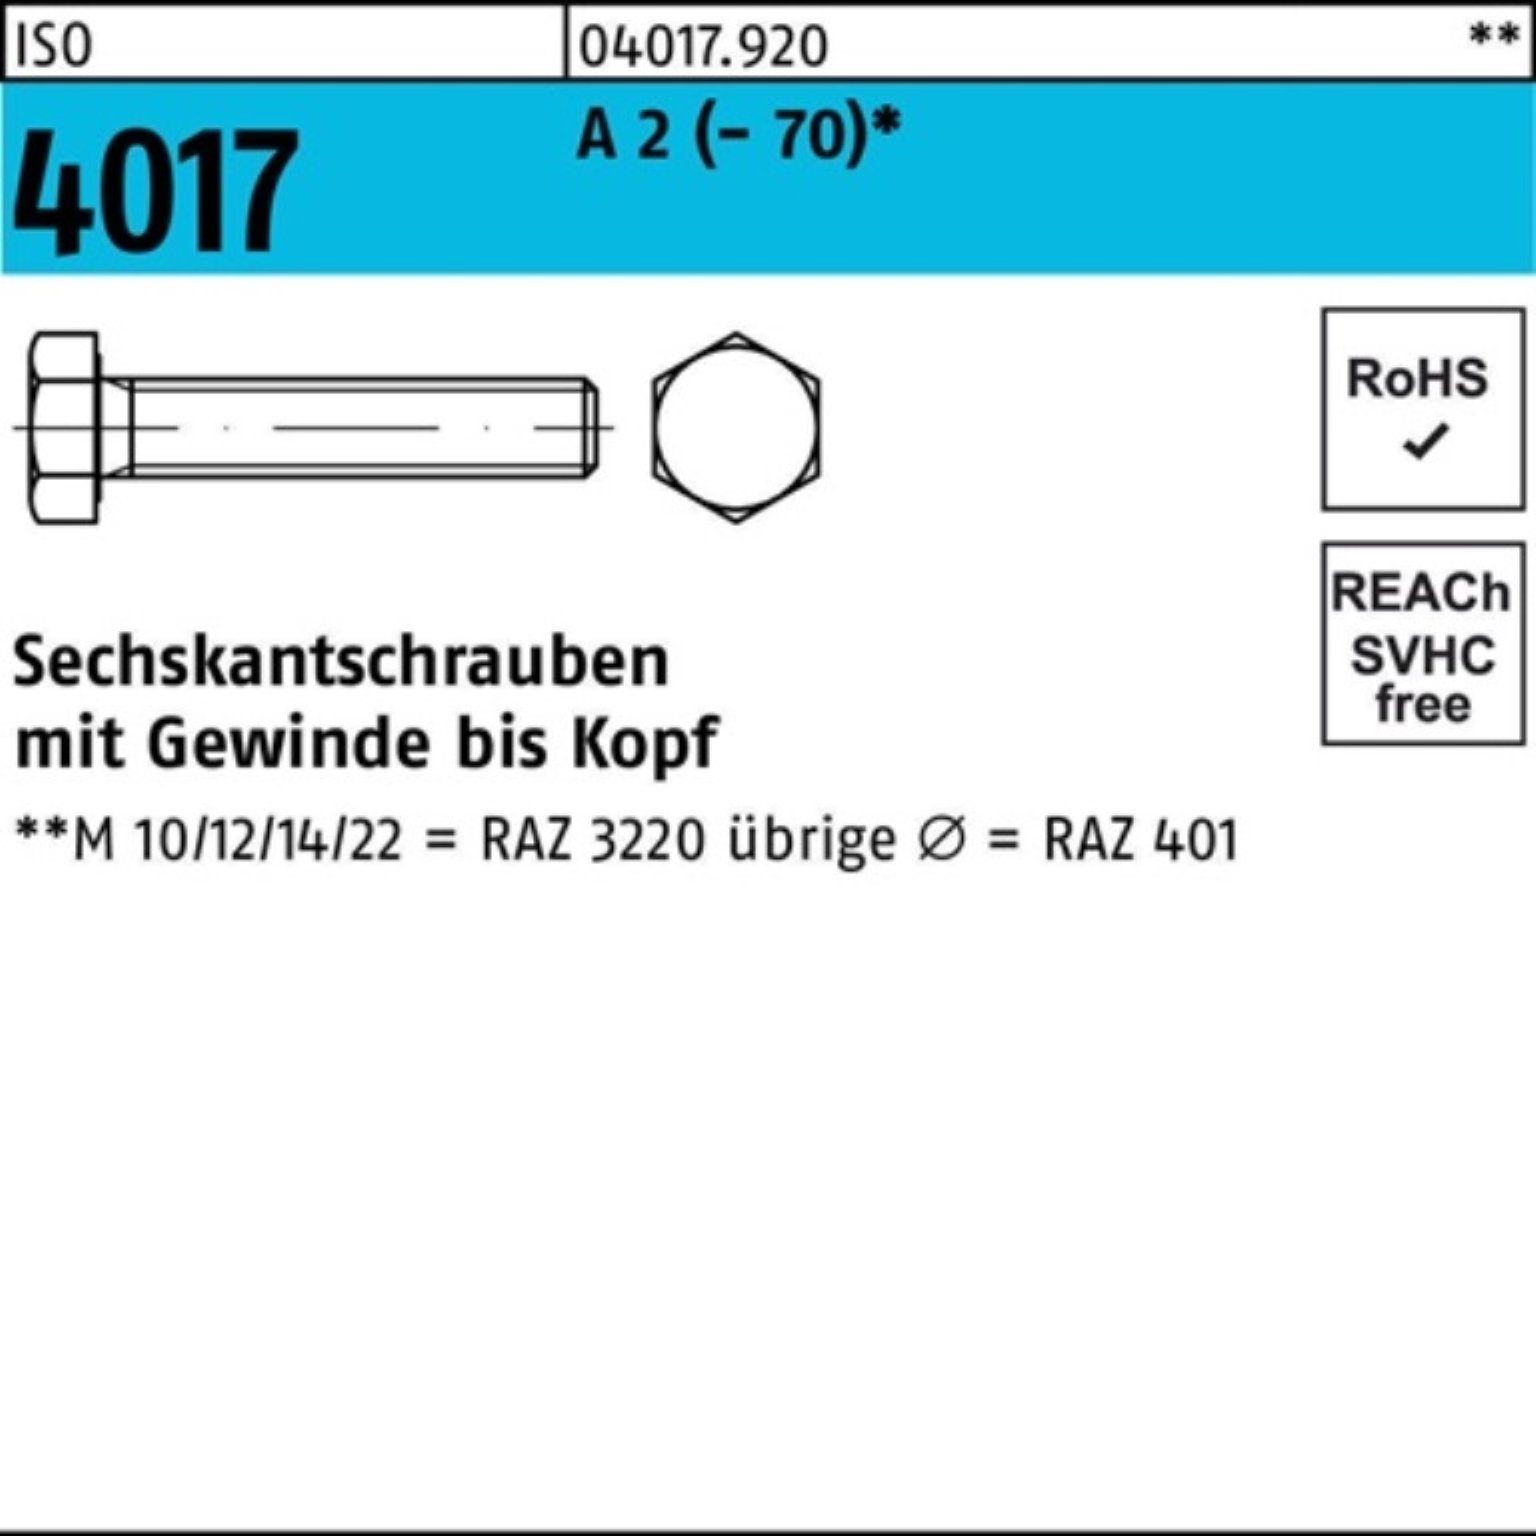 M33x 4017 Stück Sechskantschraube 100er A Pack ISO 150 VG 2 1 (70) Bufab Sechskantschraube